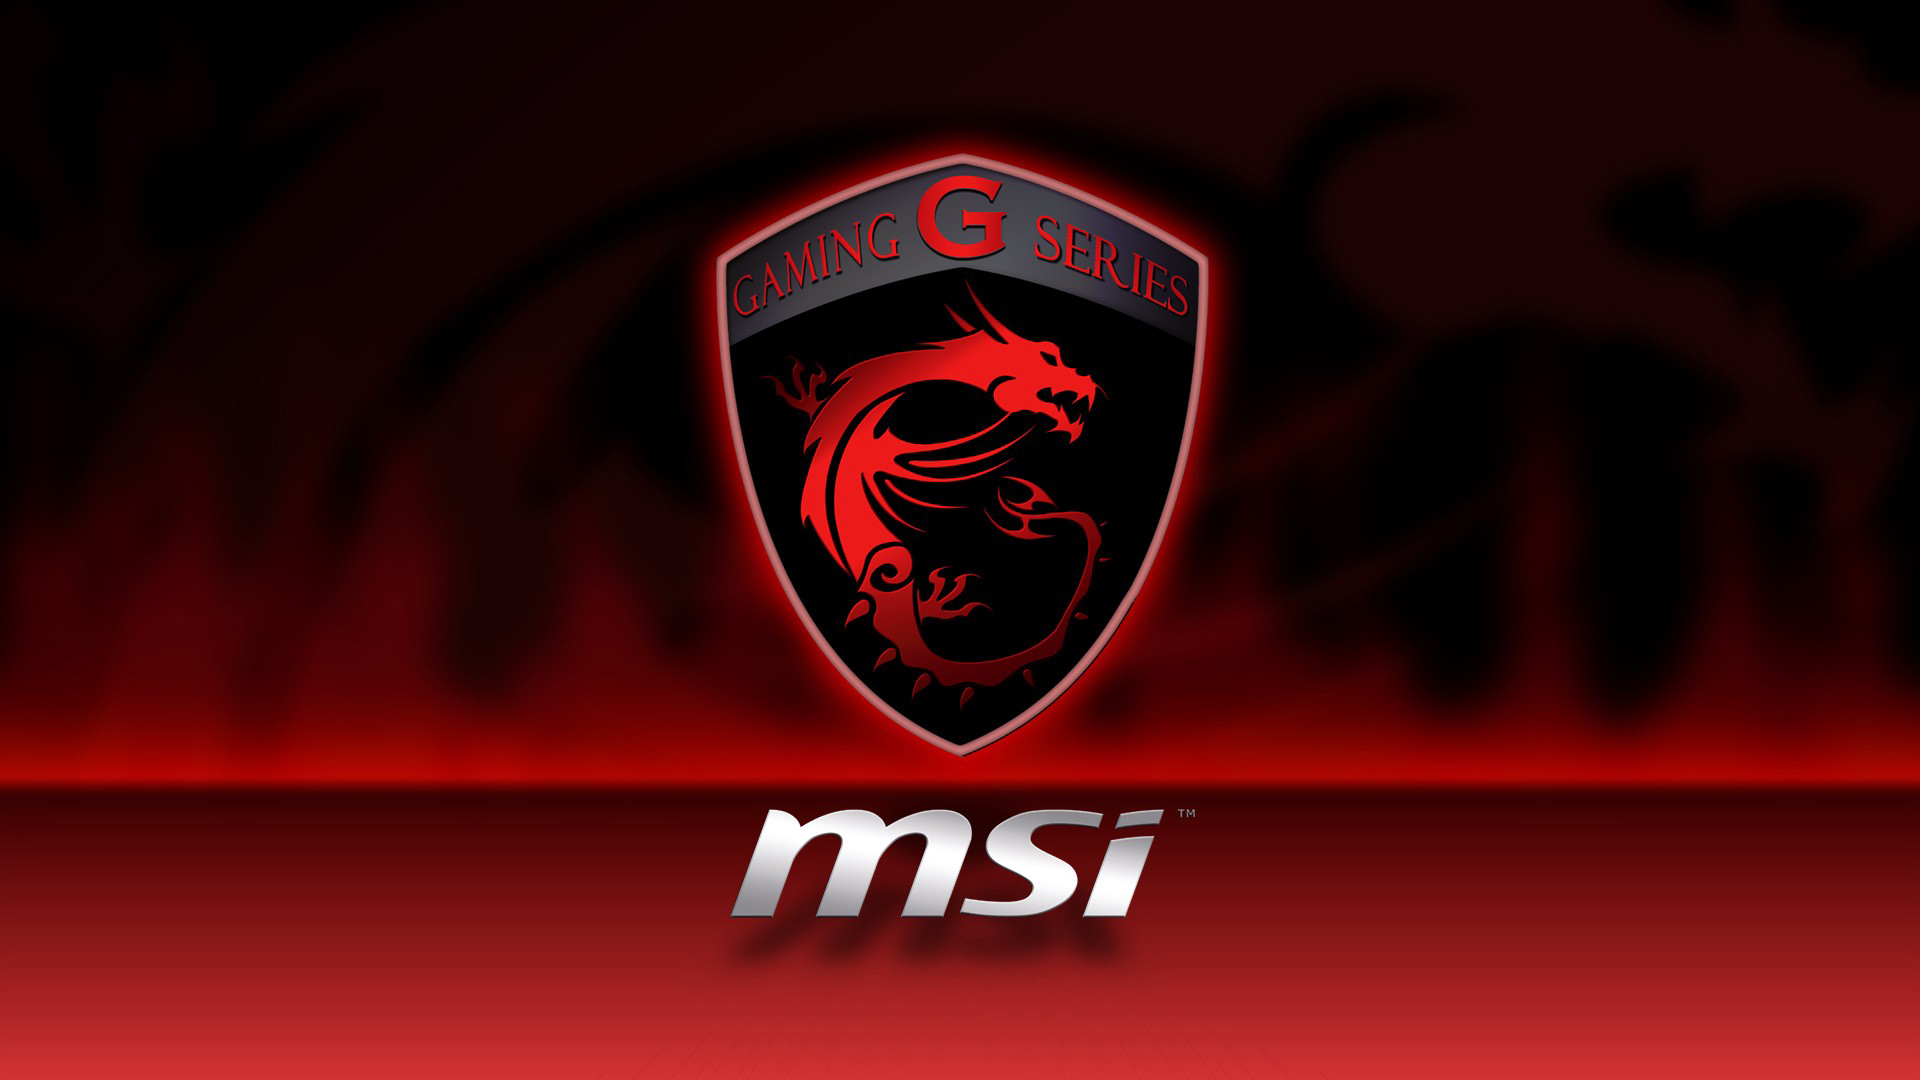 Msi Gaming Series Logo Wallpaper HD